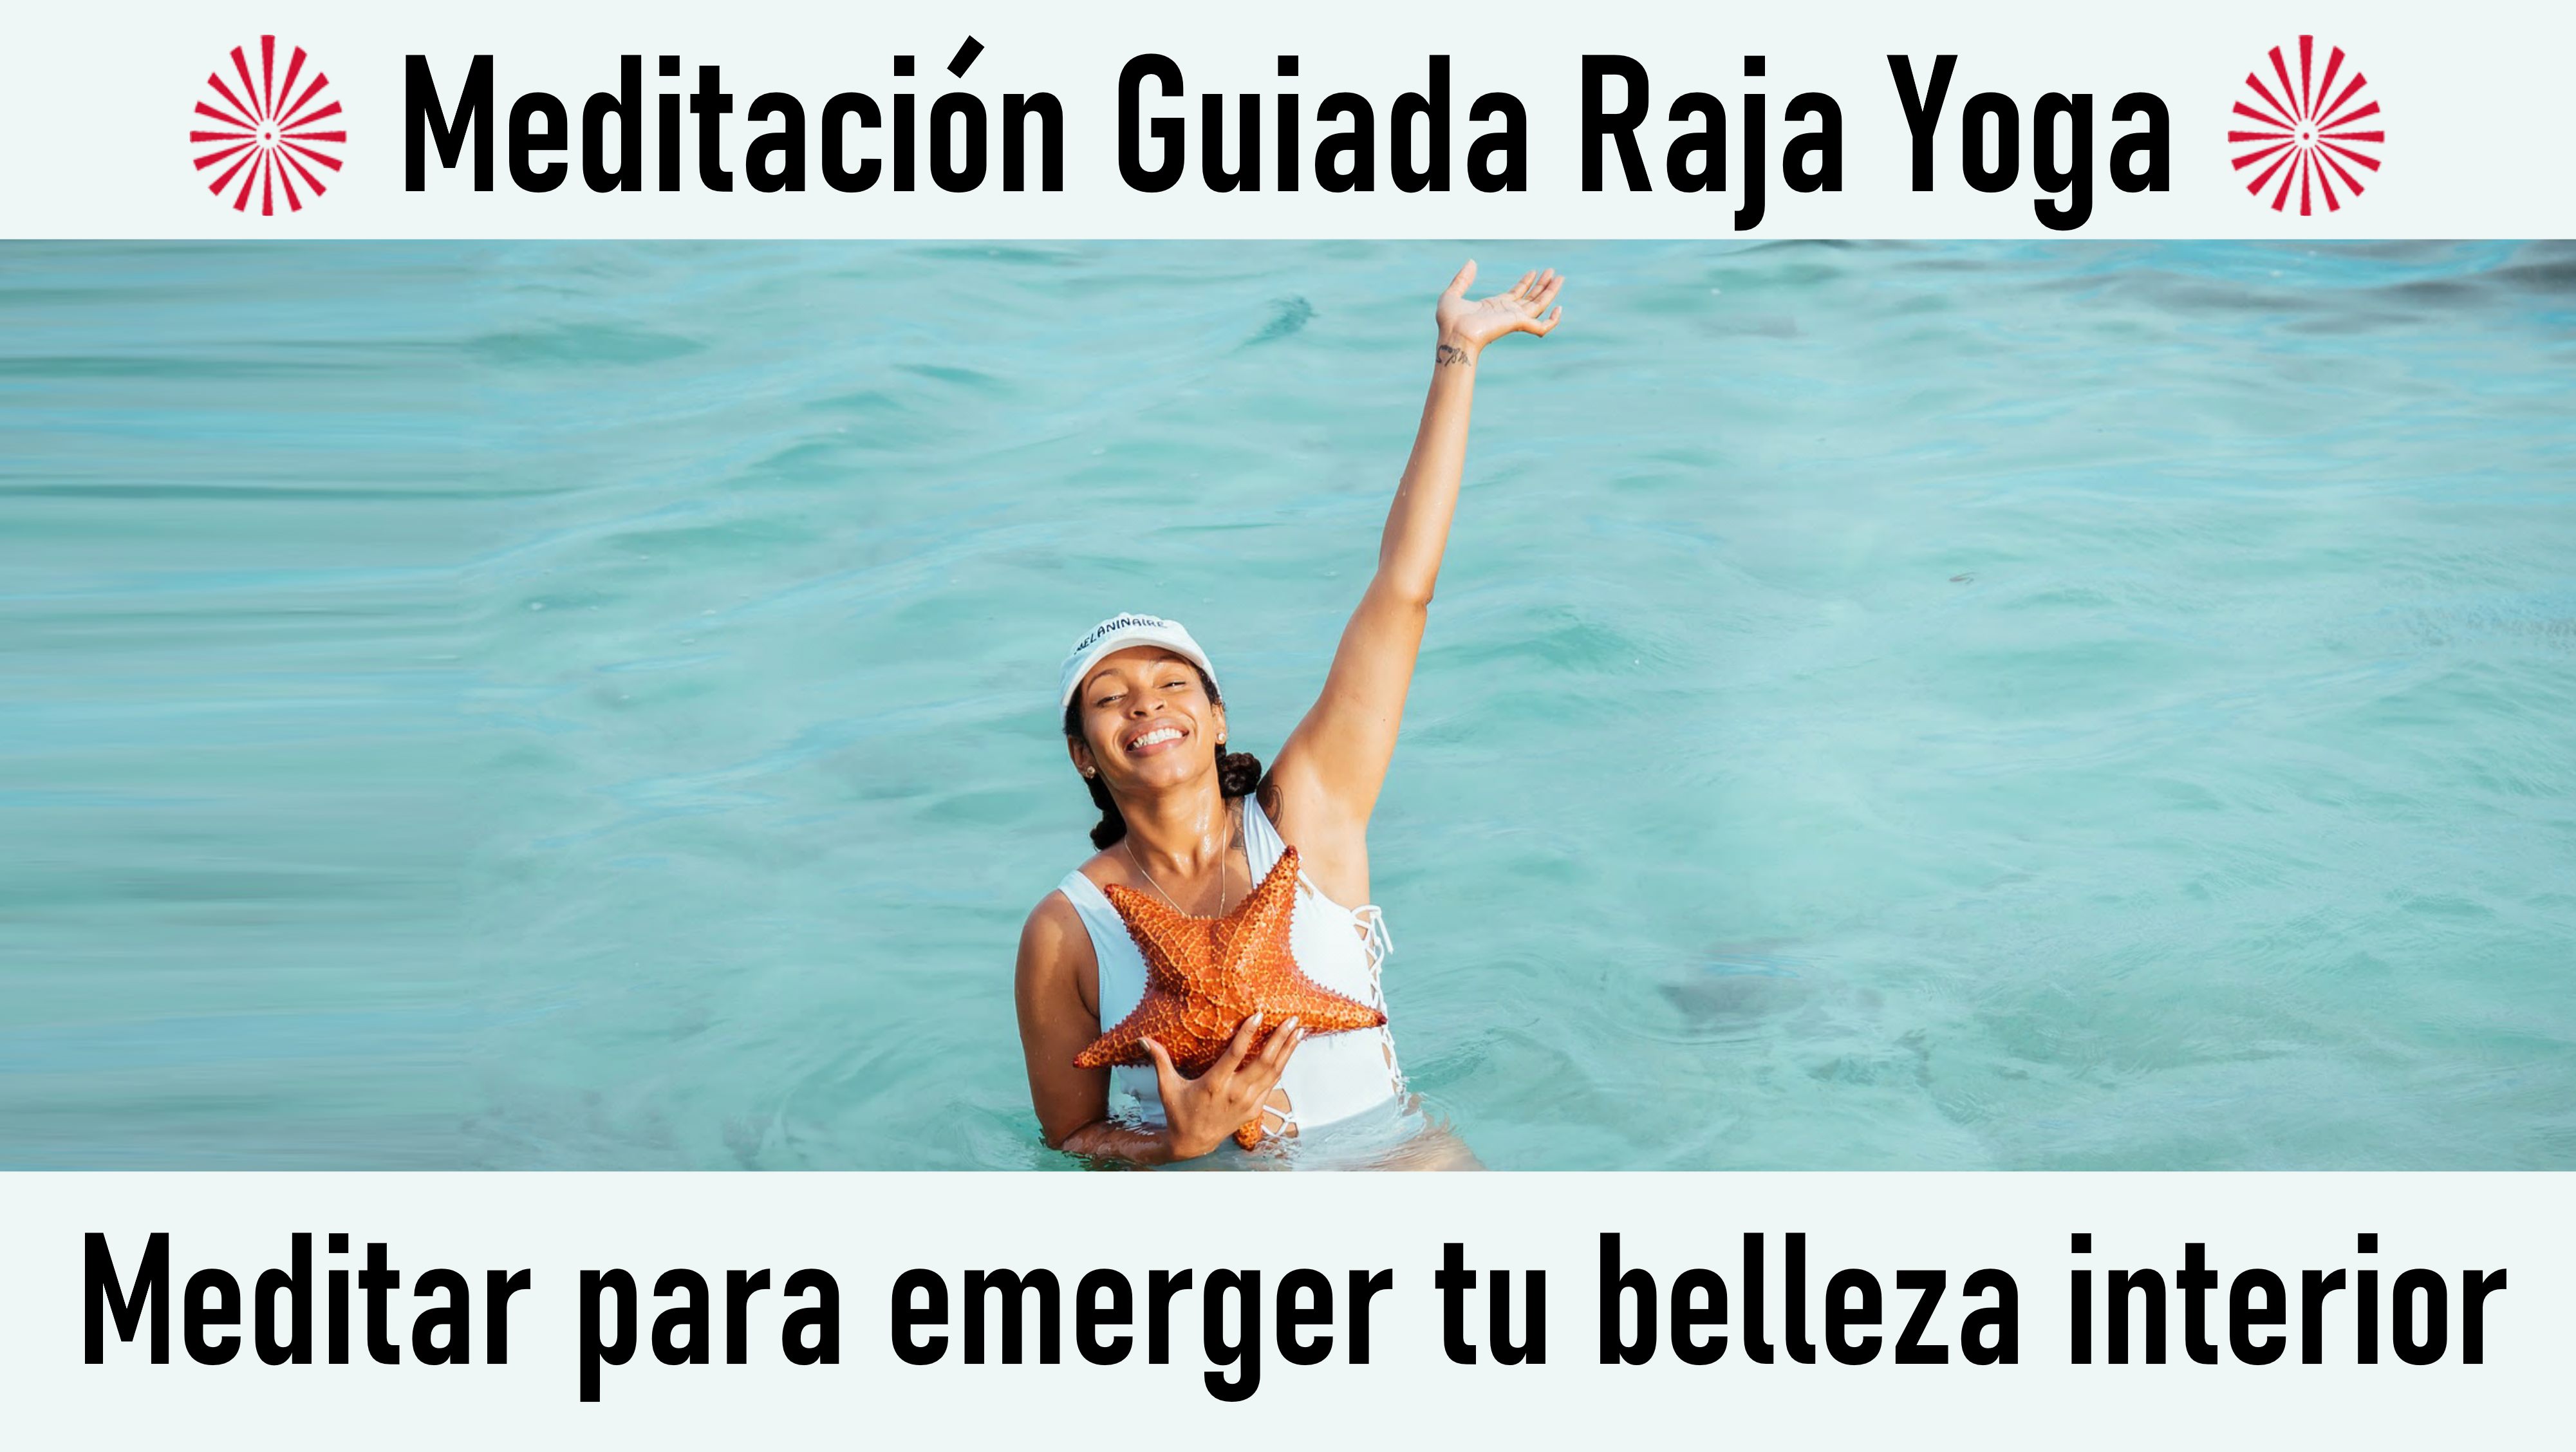 Meditación  Raja Yoga: Meditar para emerger tu belleza interior (29 Julio 2020) On-line desde Sevilla